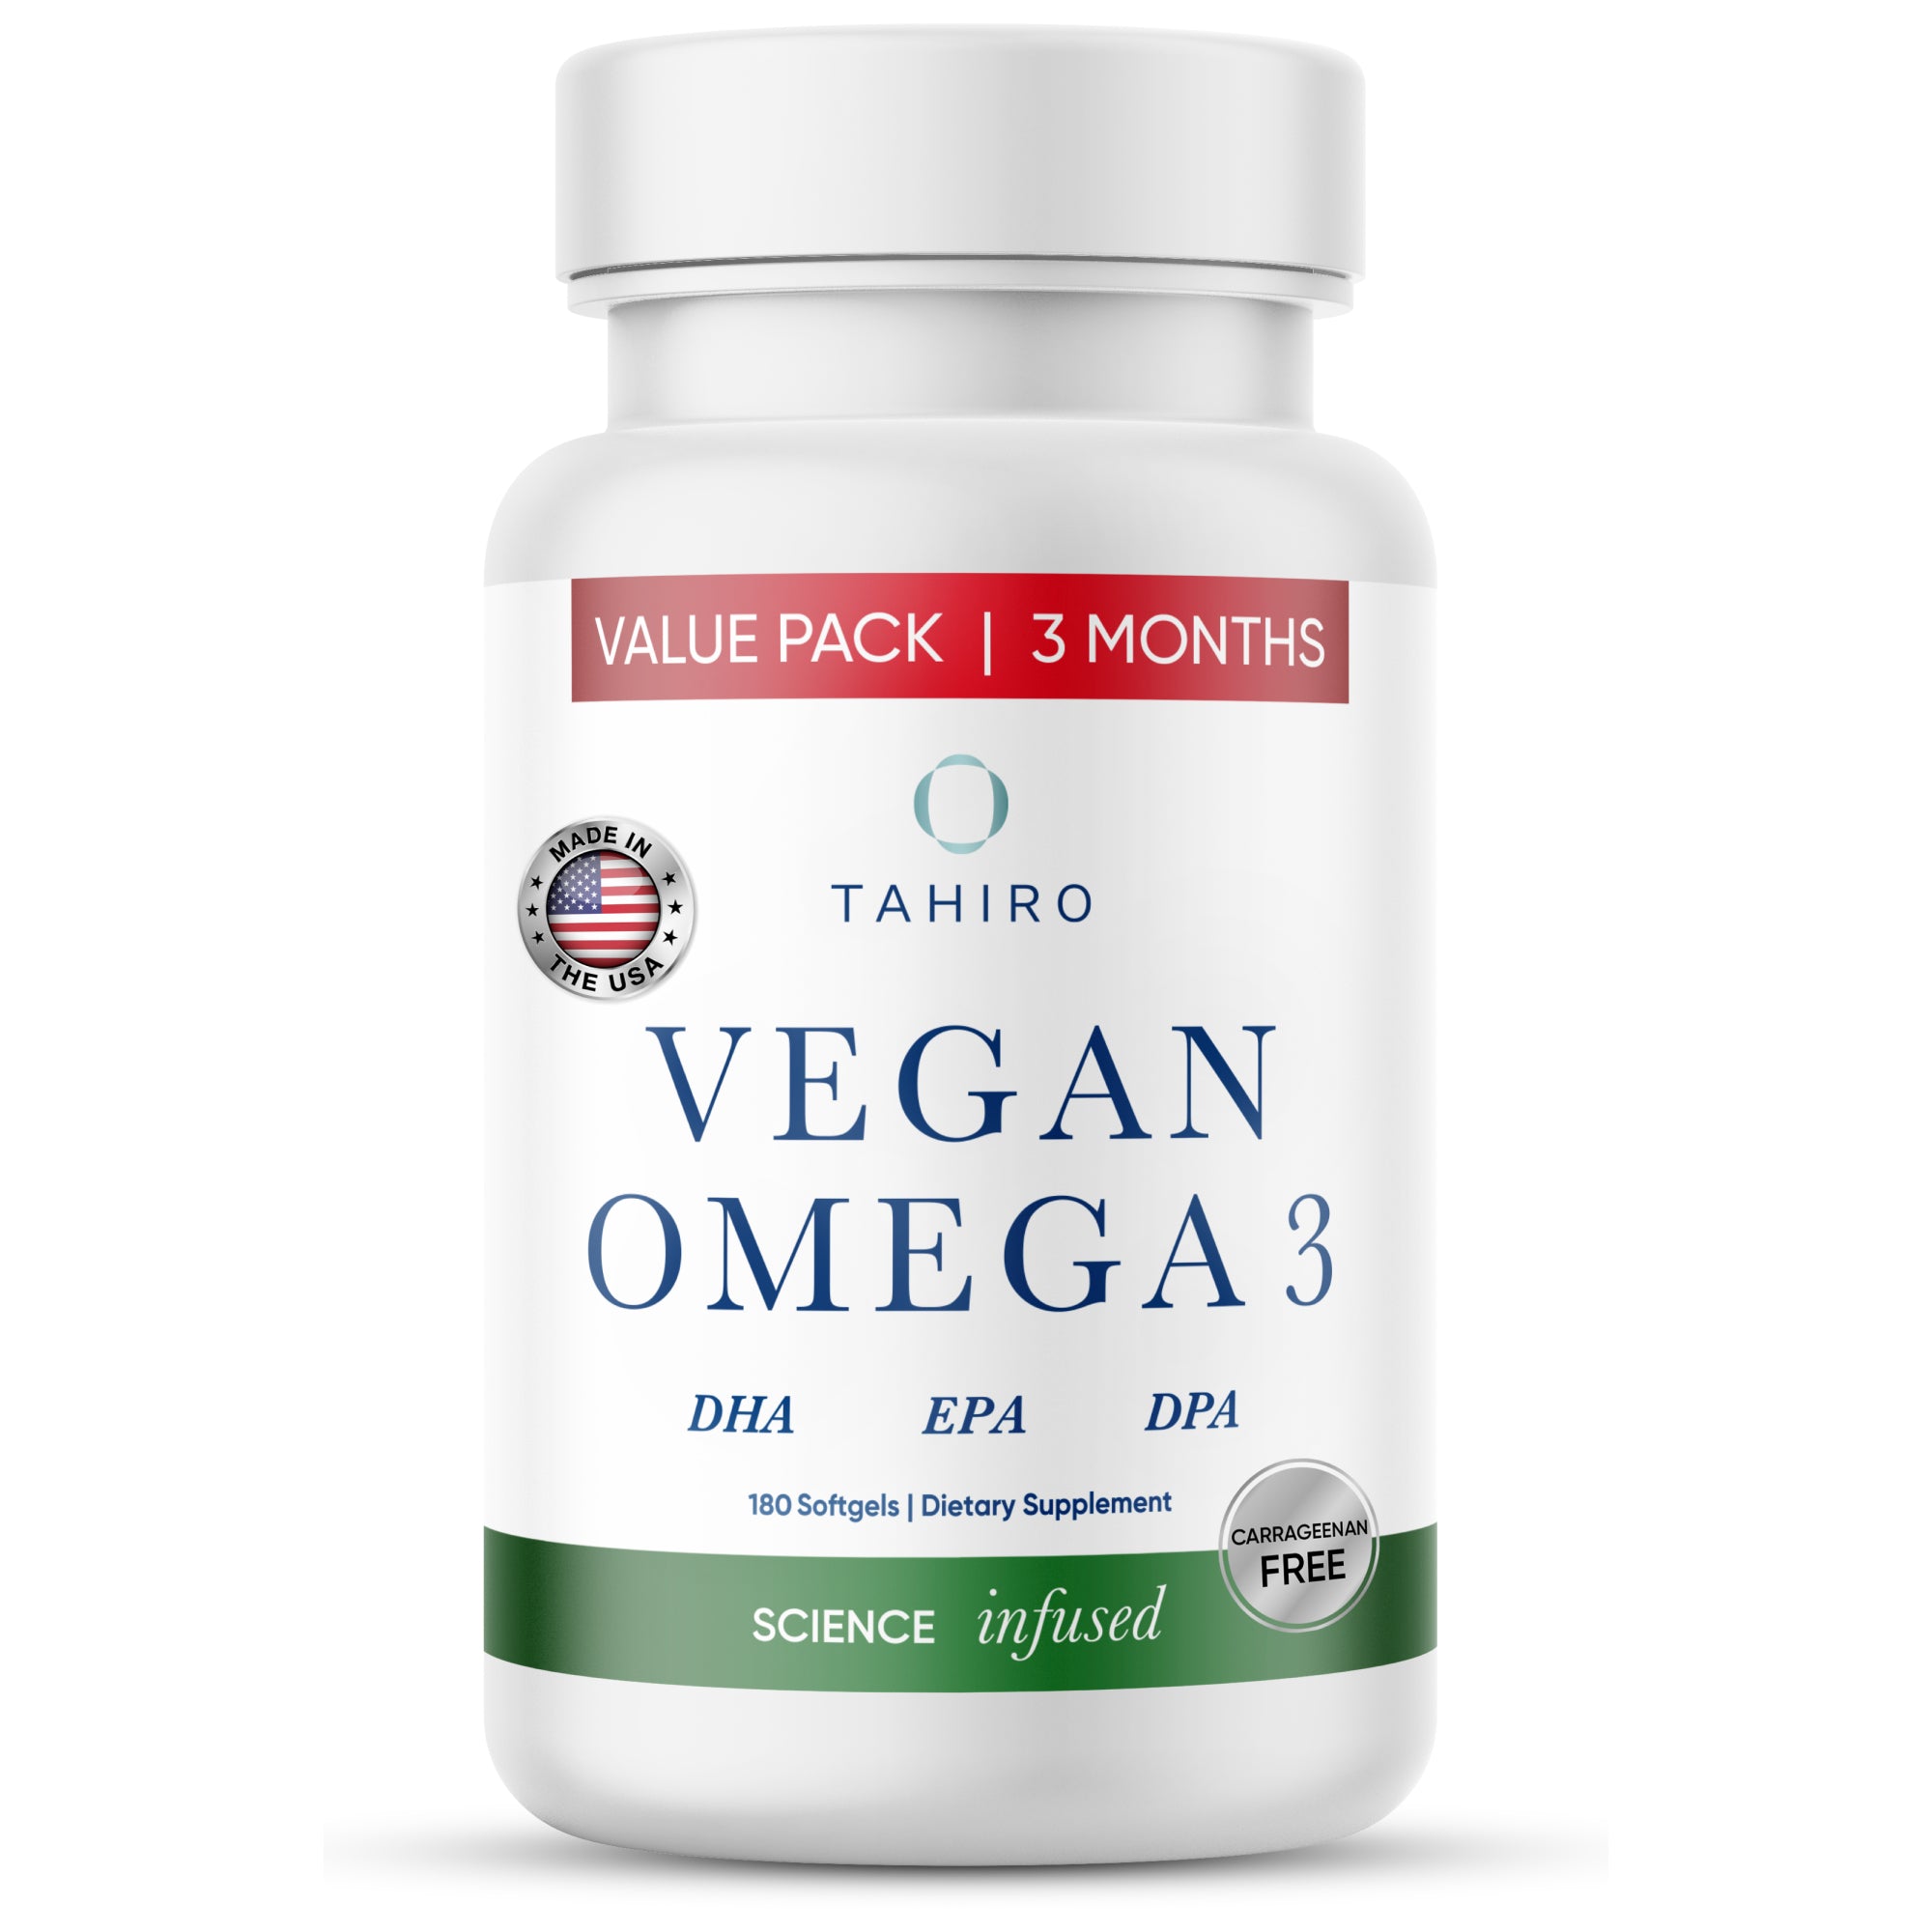 Tahiro marine algae omega 3 vegetarian supplement